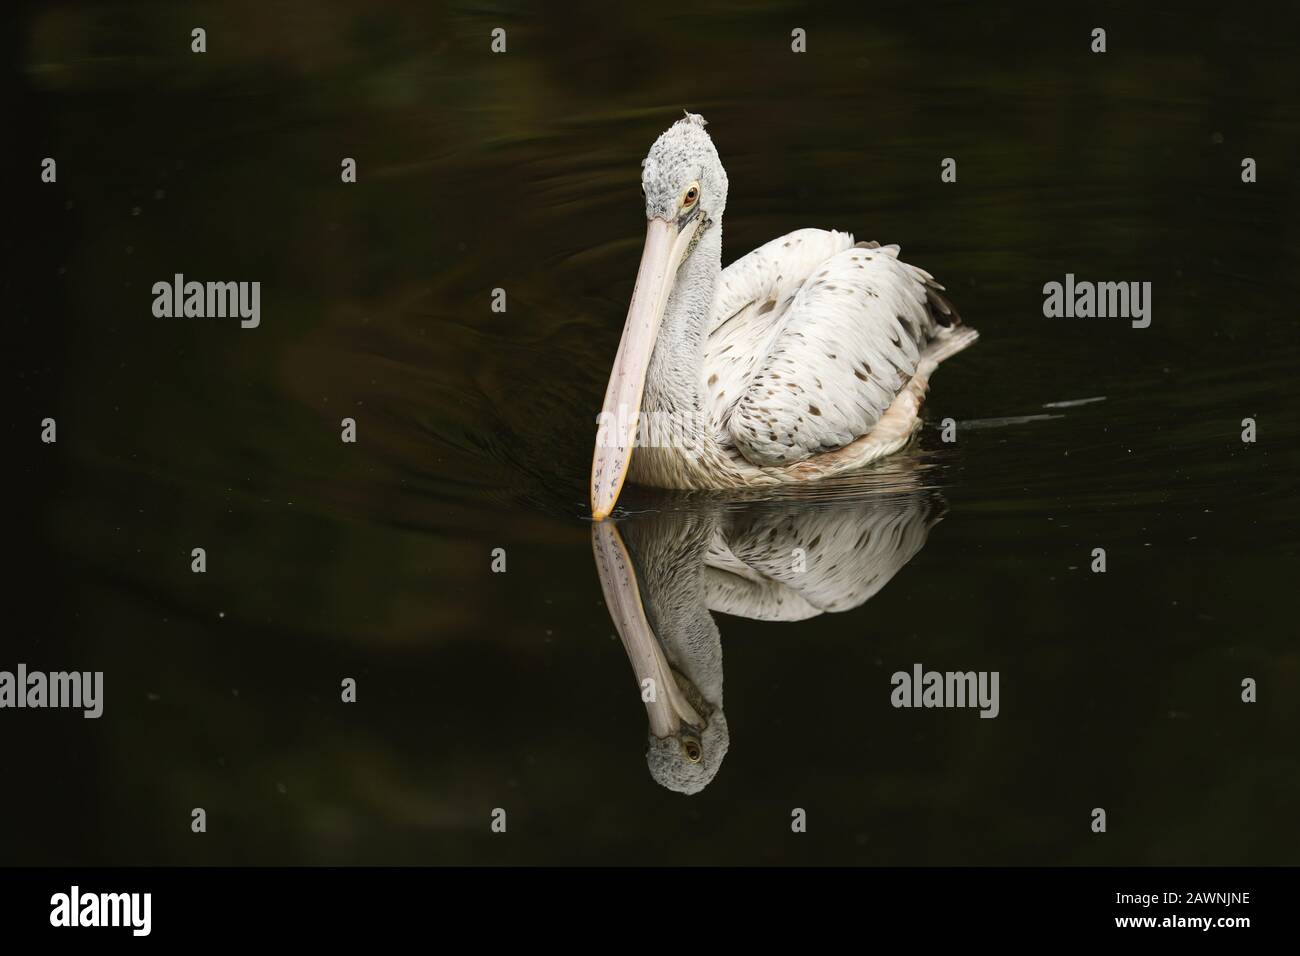 Pelicano dalmata - pelecanus crispus - specchiatura su acqua nera Foto Stock